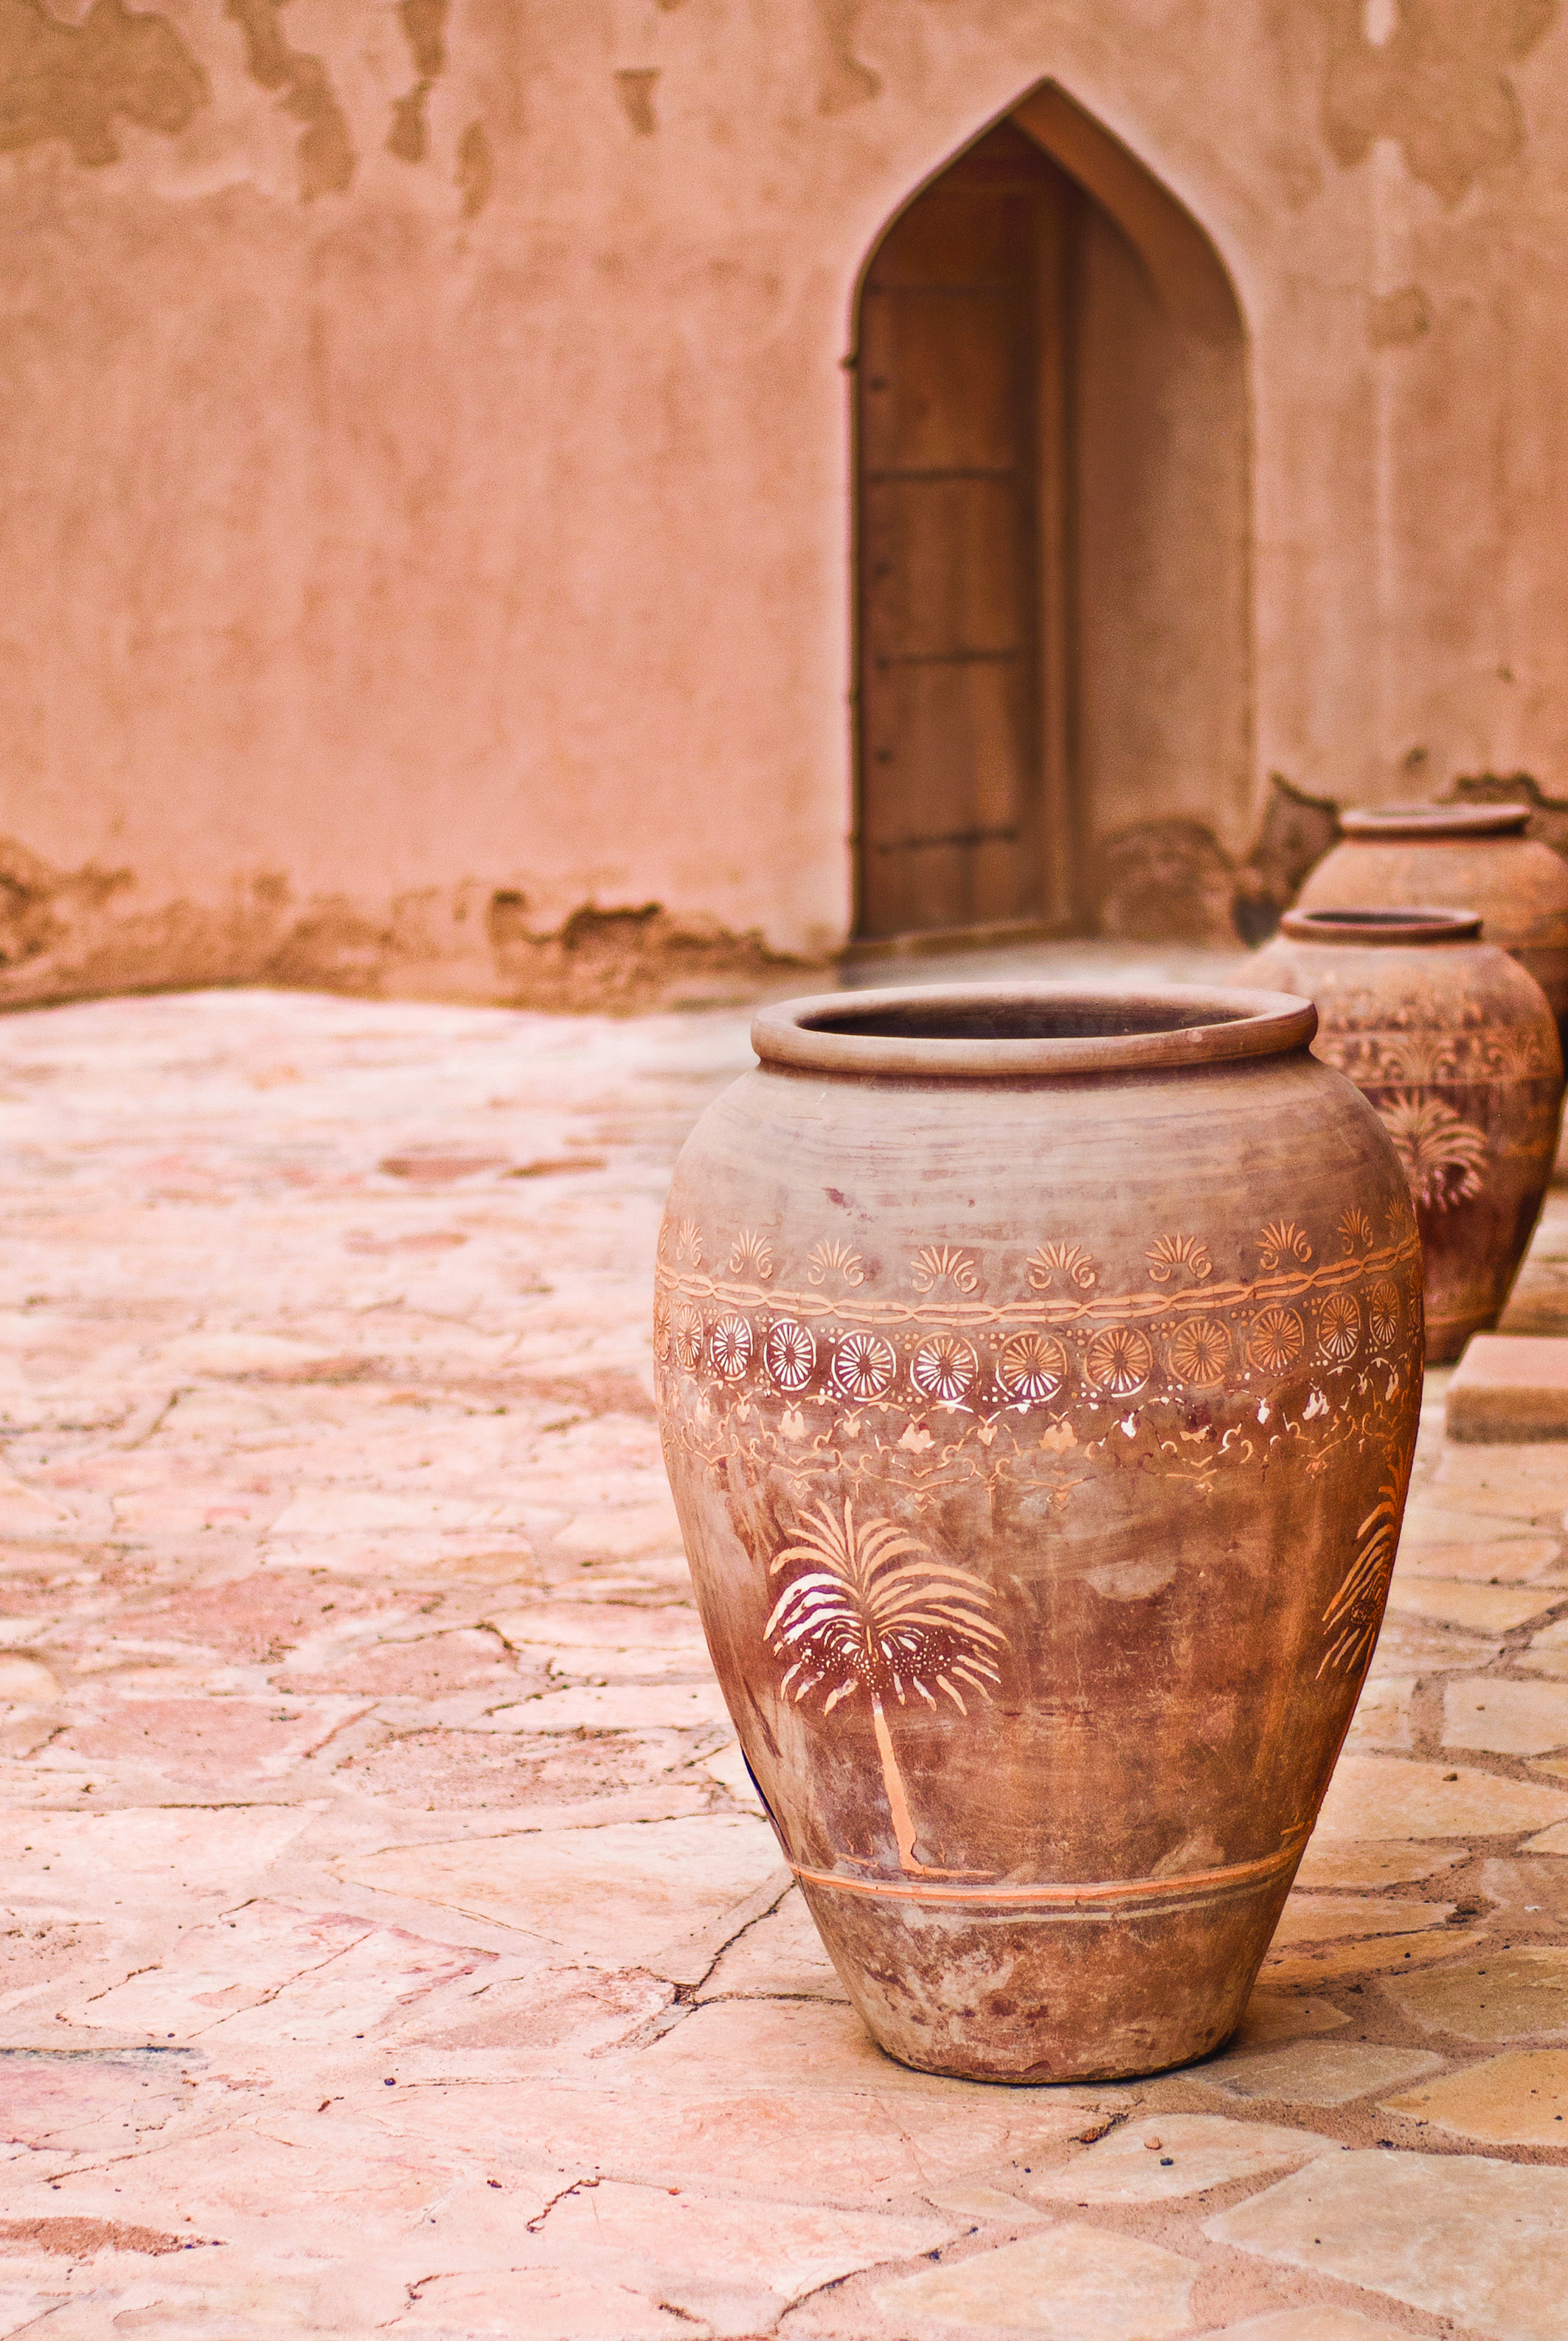 Oman Culture: The Magic Art Of Pottery